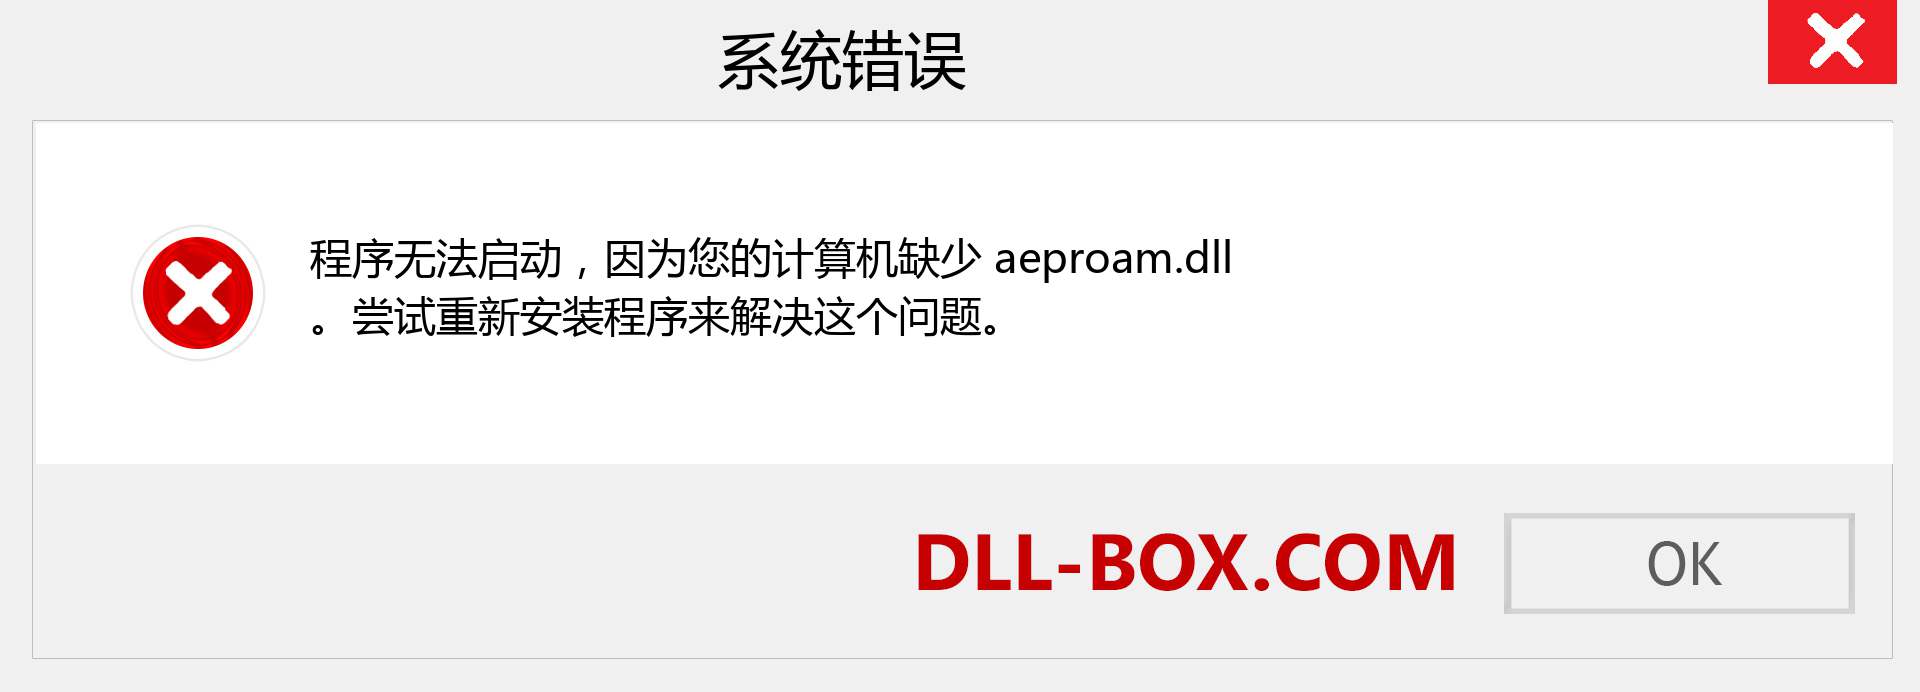 aeproam.dll 文件丢失？。 适用于 Windows 7、8、10 的下载 - 修复 Windows、照片、图像上的 aeproam dll 丢失错误